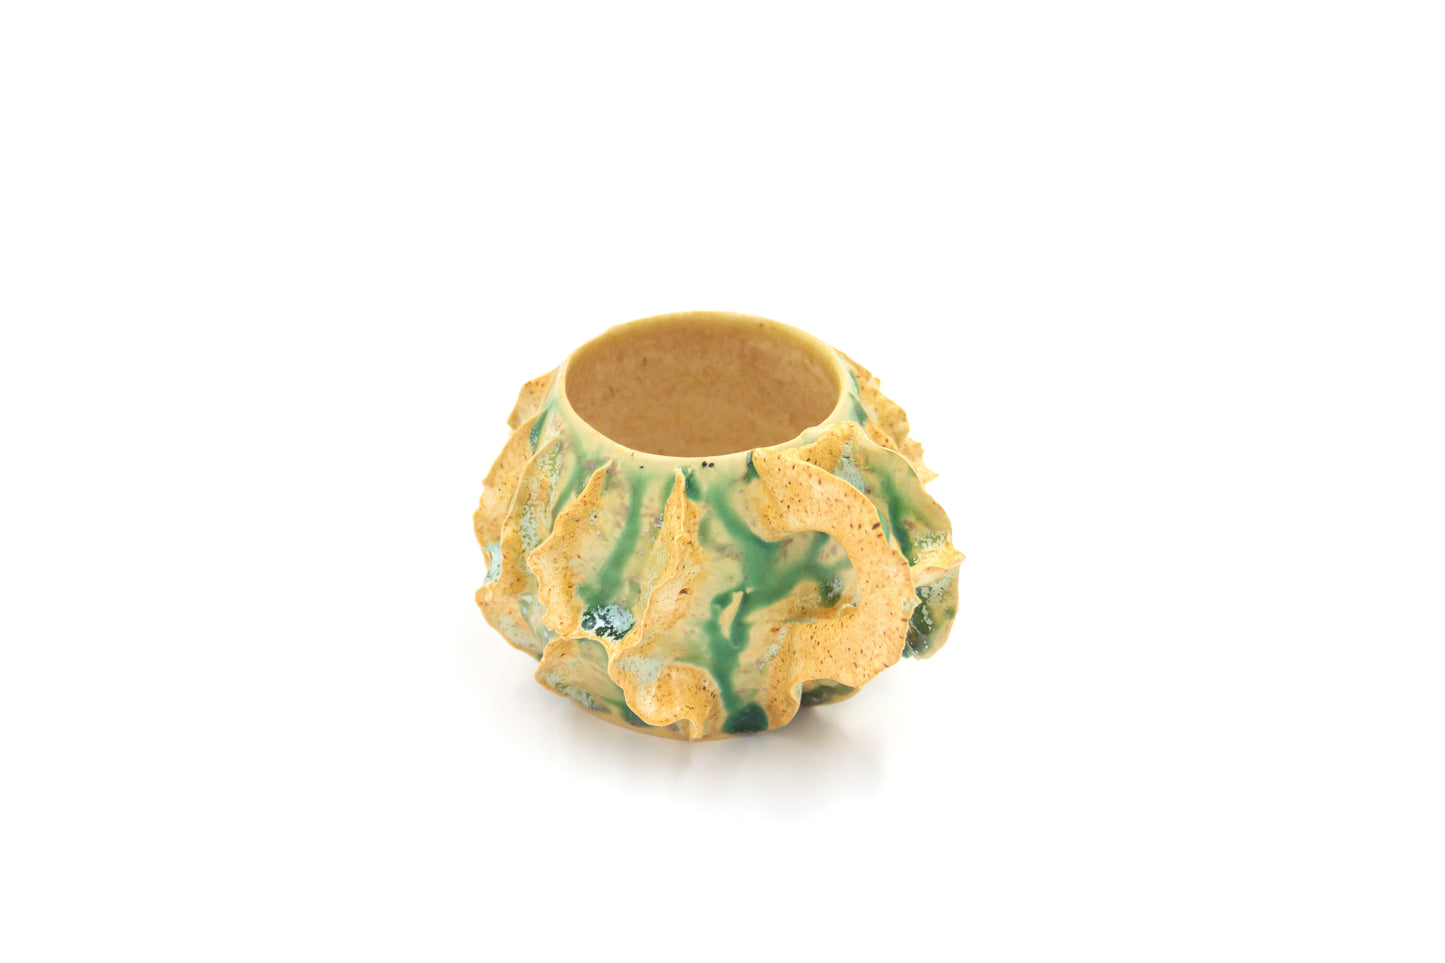 Kubek ceramiczny w kolorze beżowo-zielonym